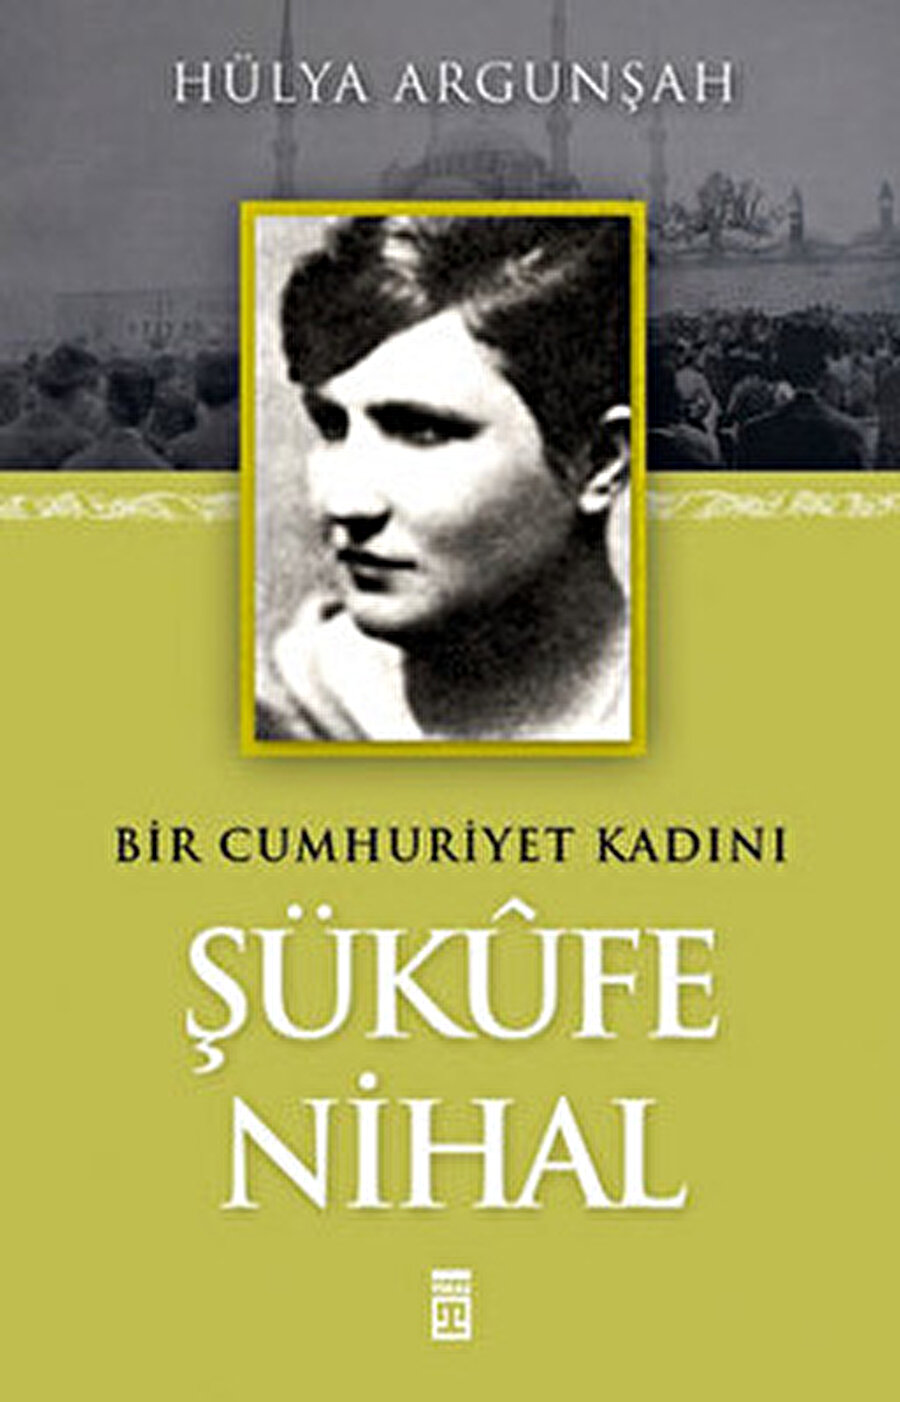 Şükûfe Nihal Başar, Türkiye’nin önemli toplumsal değişmeler geçirdiği bir dönemde eserlerinde Türk kadınlarının durumlarına vurgular yaptı.